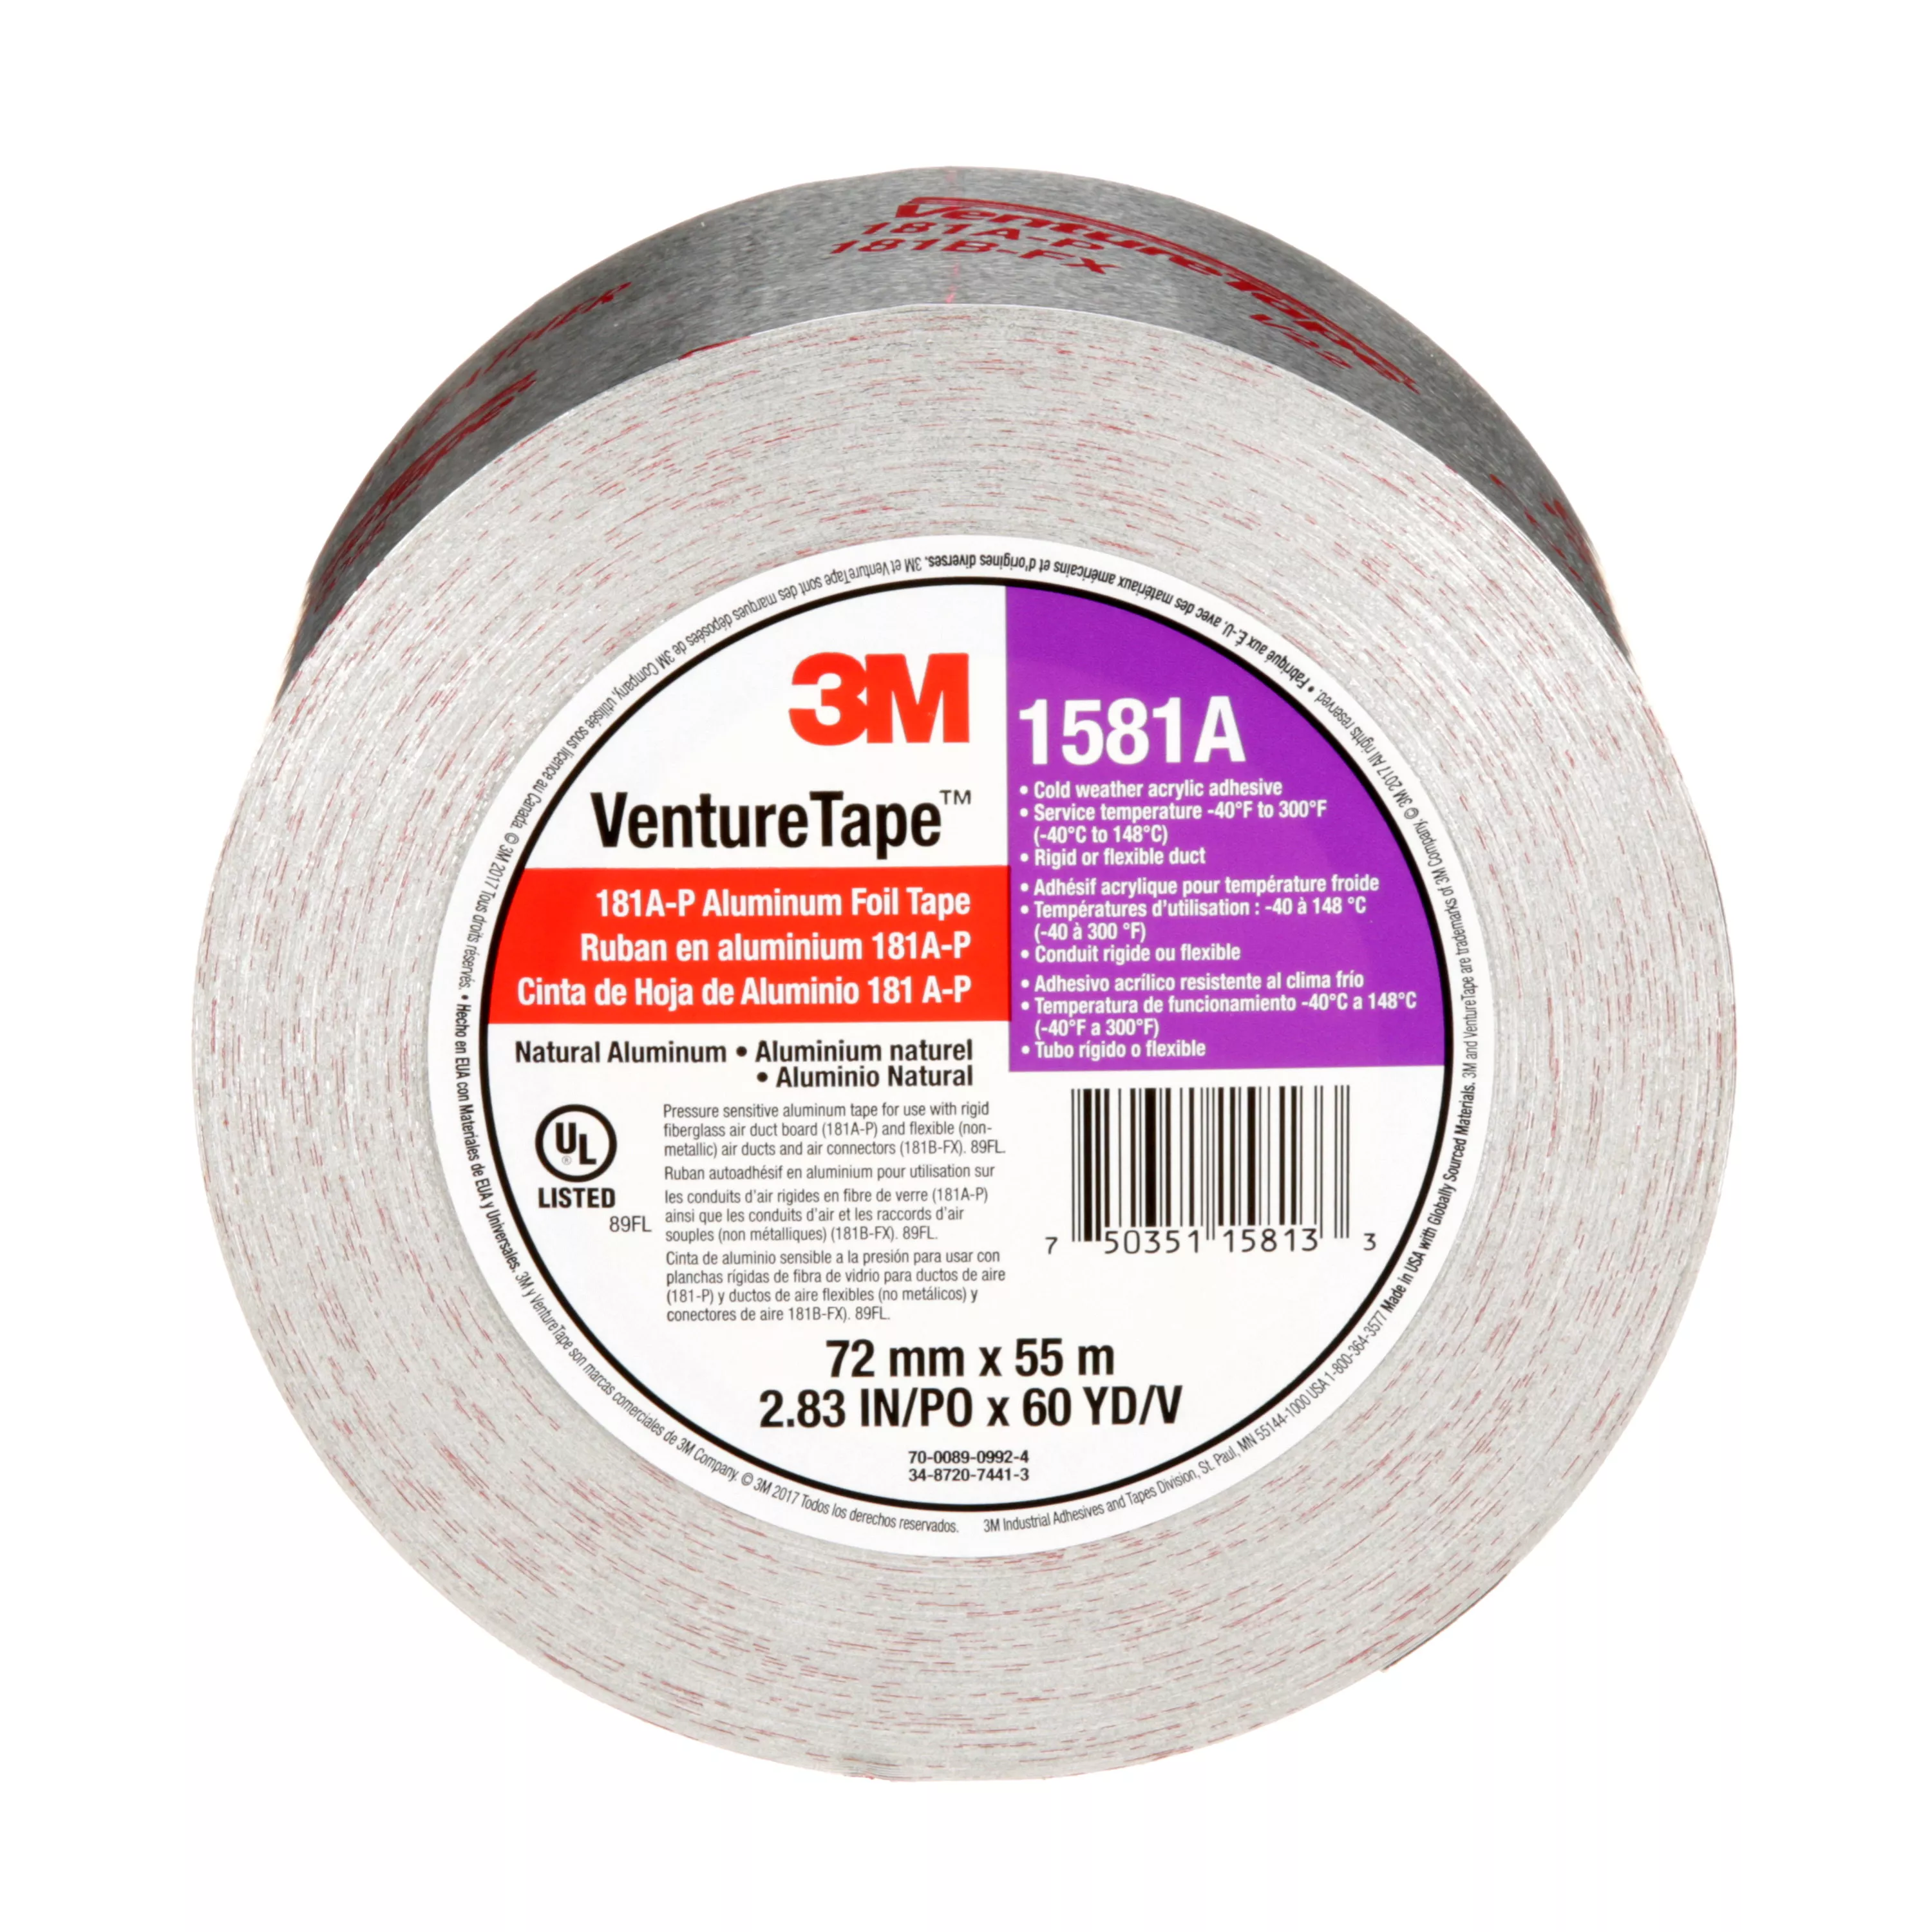 3M™ Venture Tape™ UL181A-P Aluminum Foil Tape 1581A, Silver, 72 mm x 55
m, 2 mil, 16 Rolls/Case